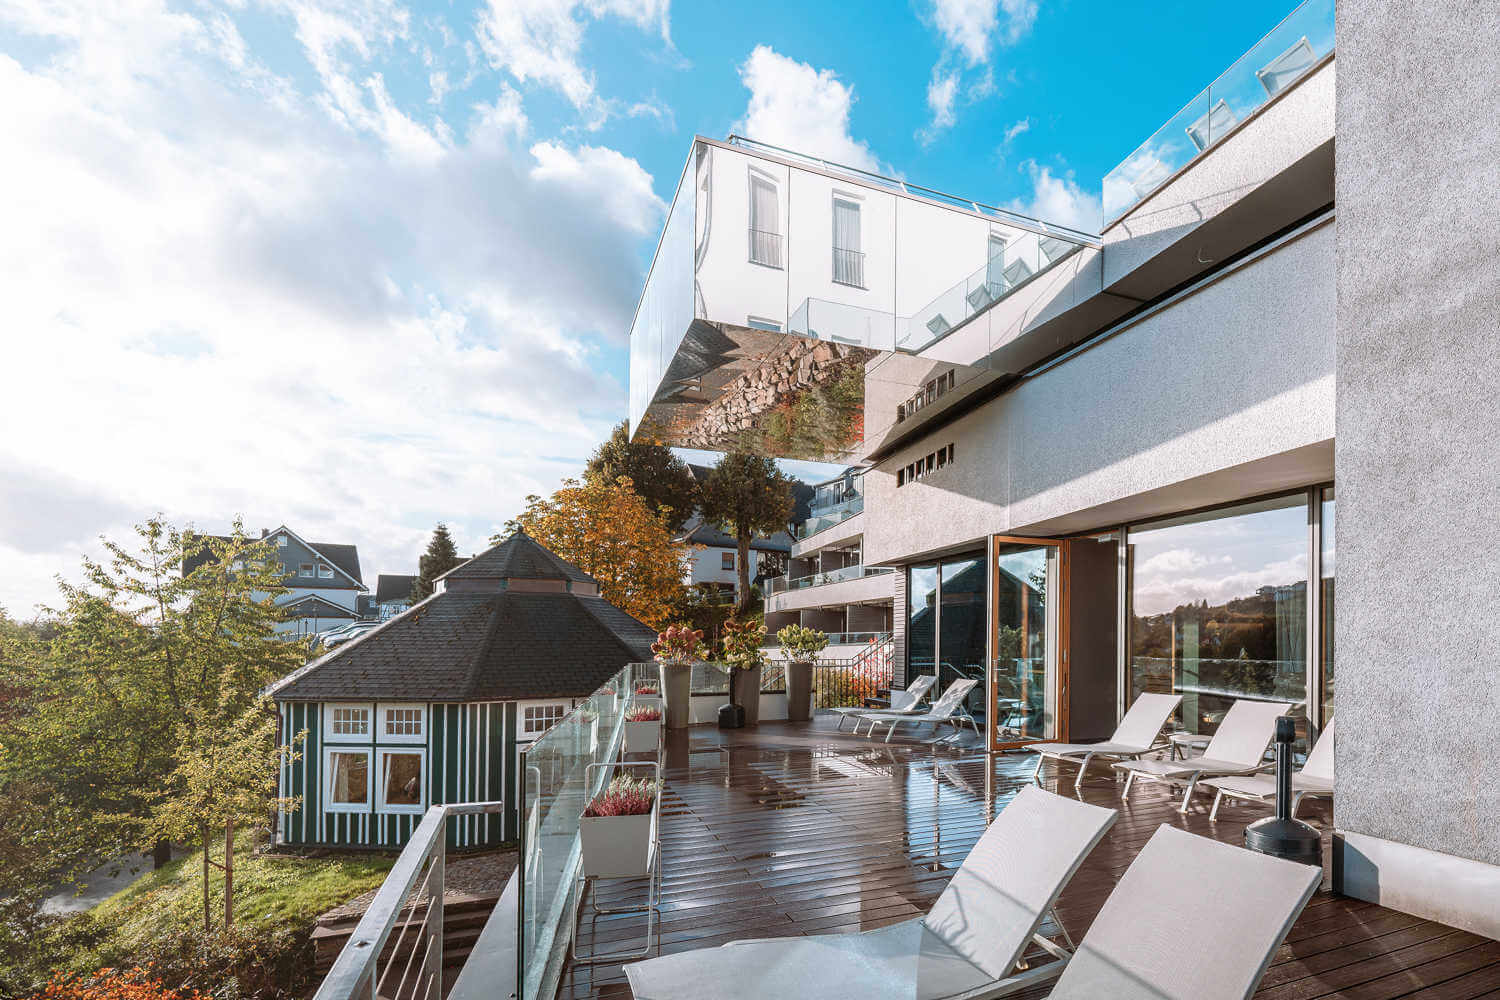 Moderne Terrasse mit Glasgeländern und eleganten Liegestühlen, Blick auf traditionelle Häuser.